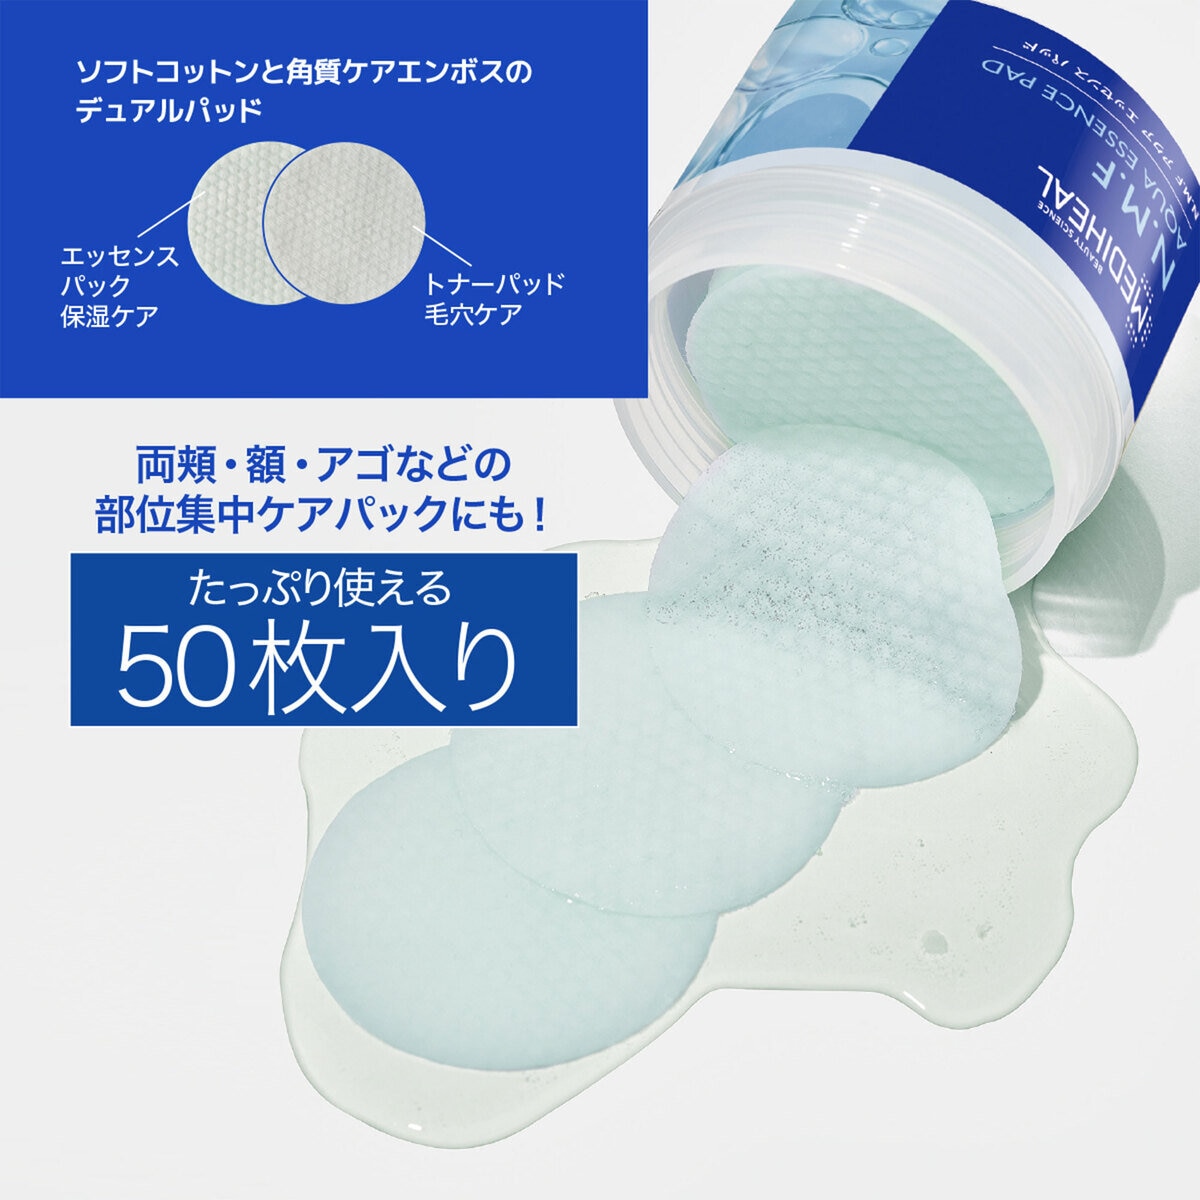 MEDIHEAL (メディヒール) カーミングエッセンスパッド 50枚 x Costco Japan